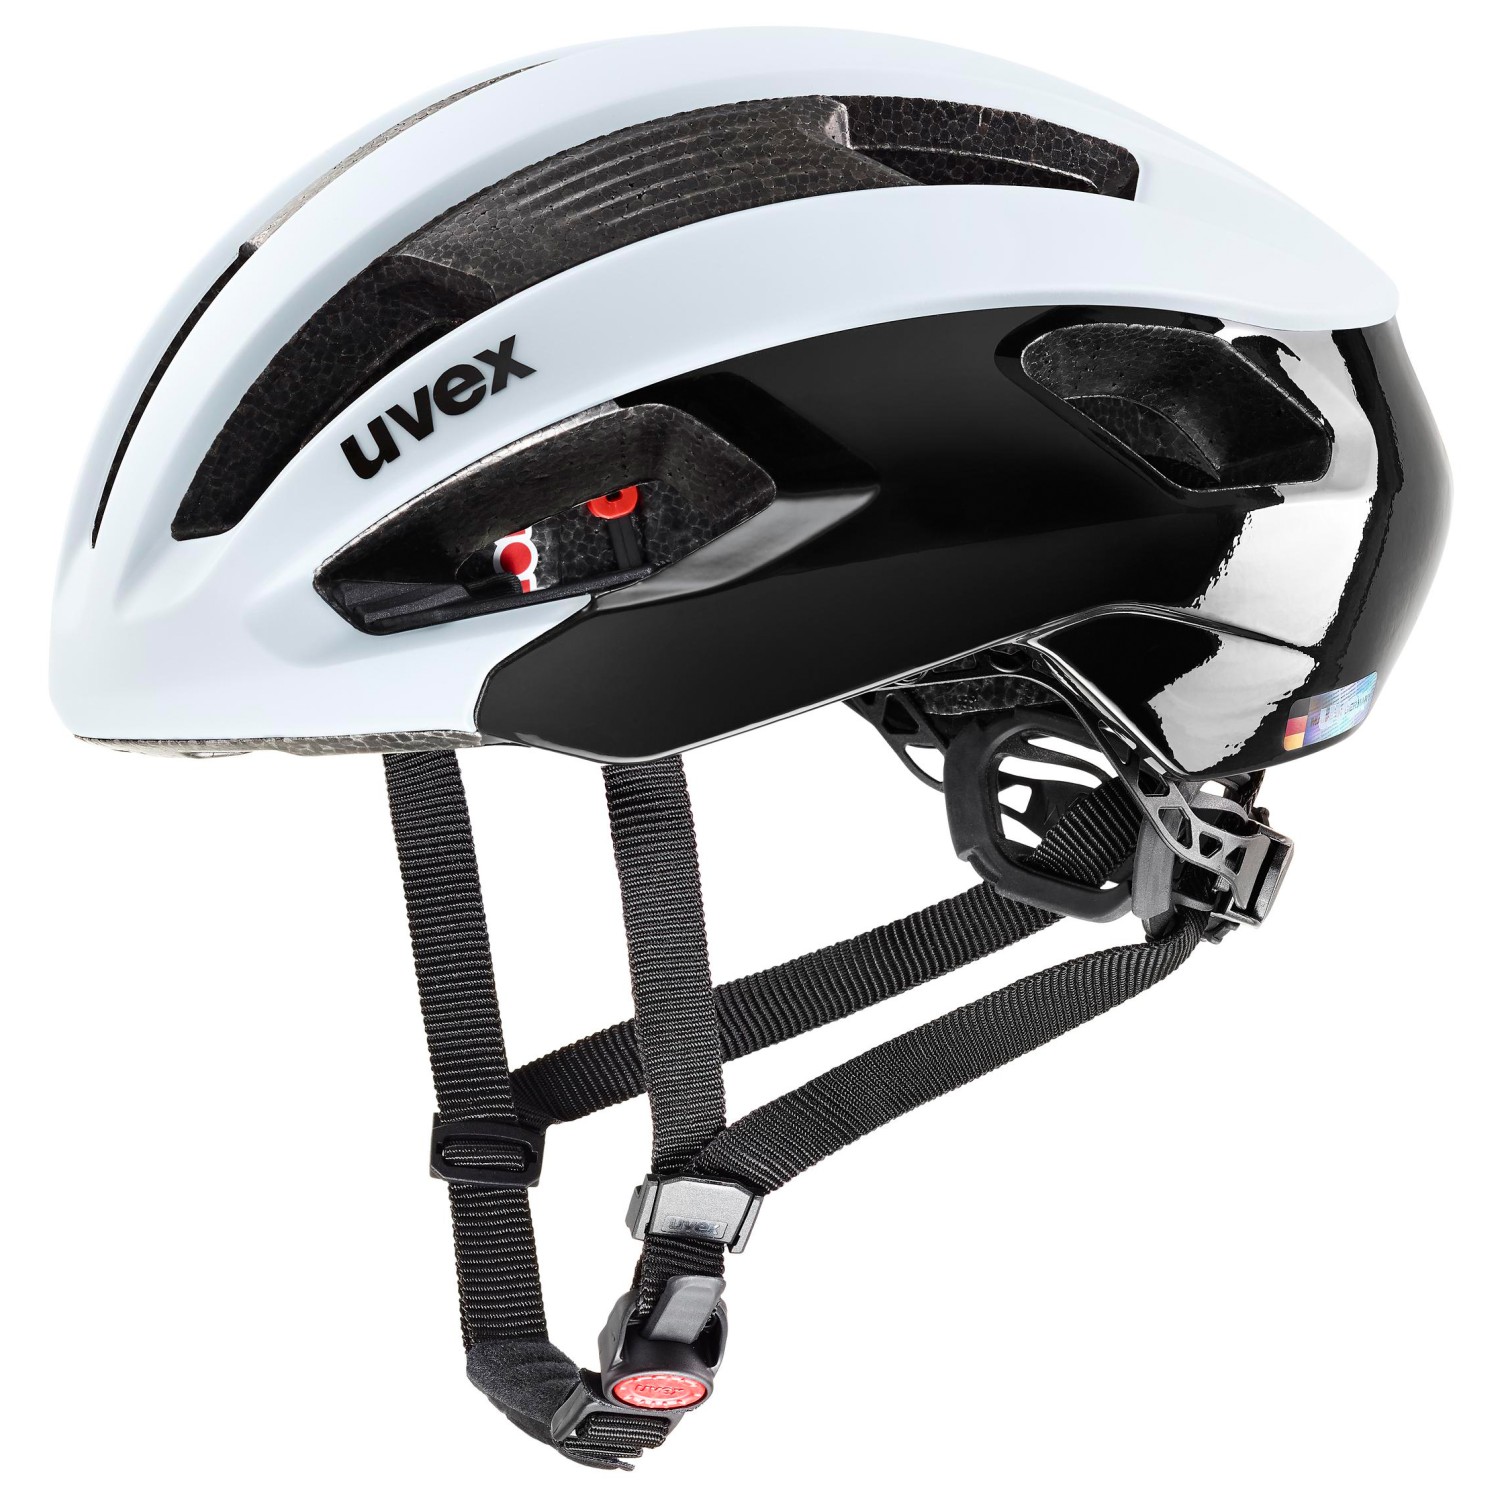 велосипедный шлем uvex true cc цвет euphoria black matt Велосипедный шлем Uvex Rise CC, цвет Cloud/Black Matt